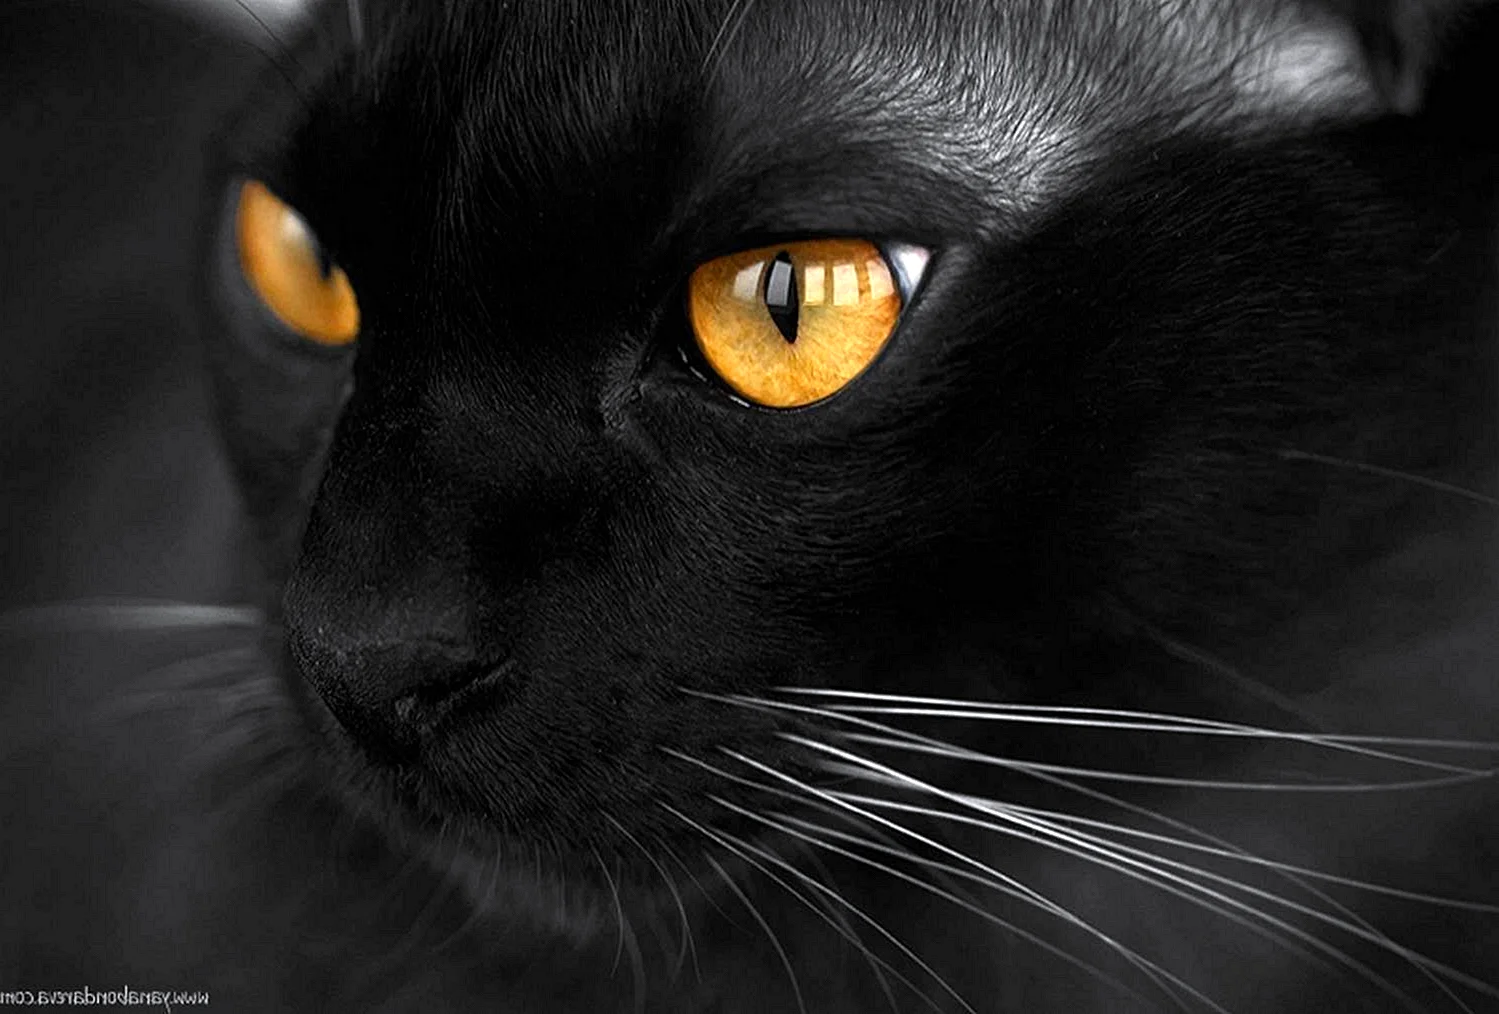 Черная кошка с карими глазами